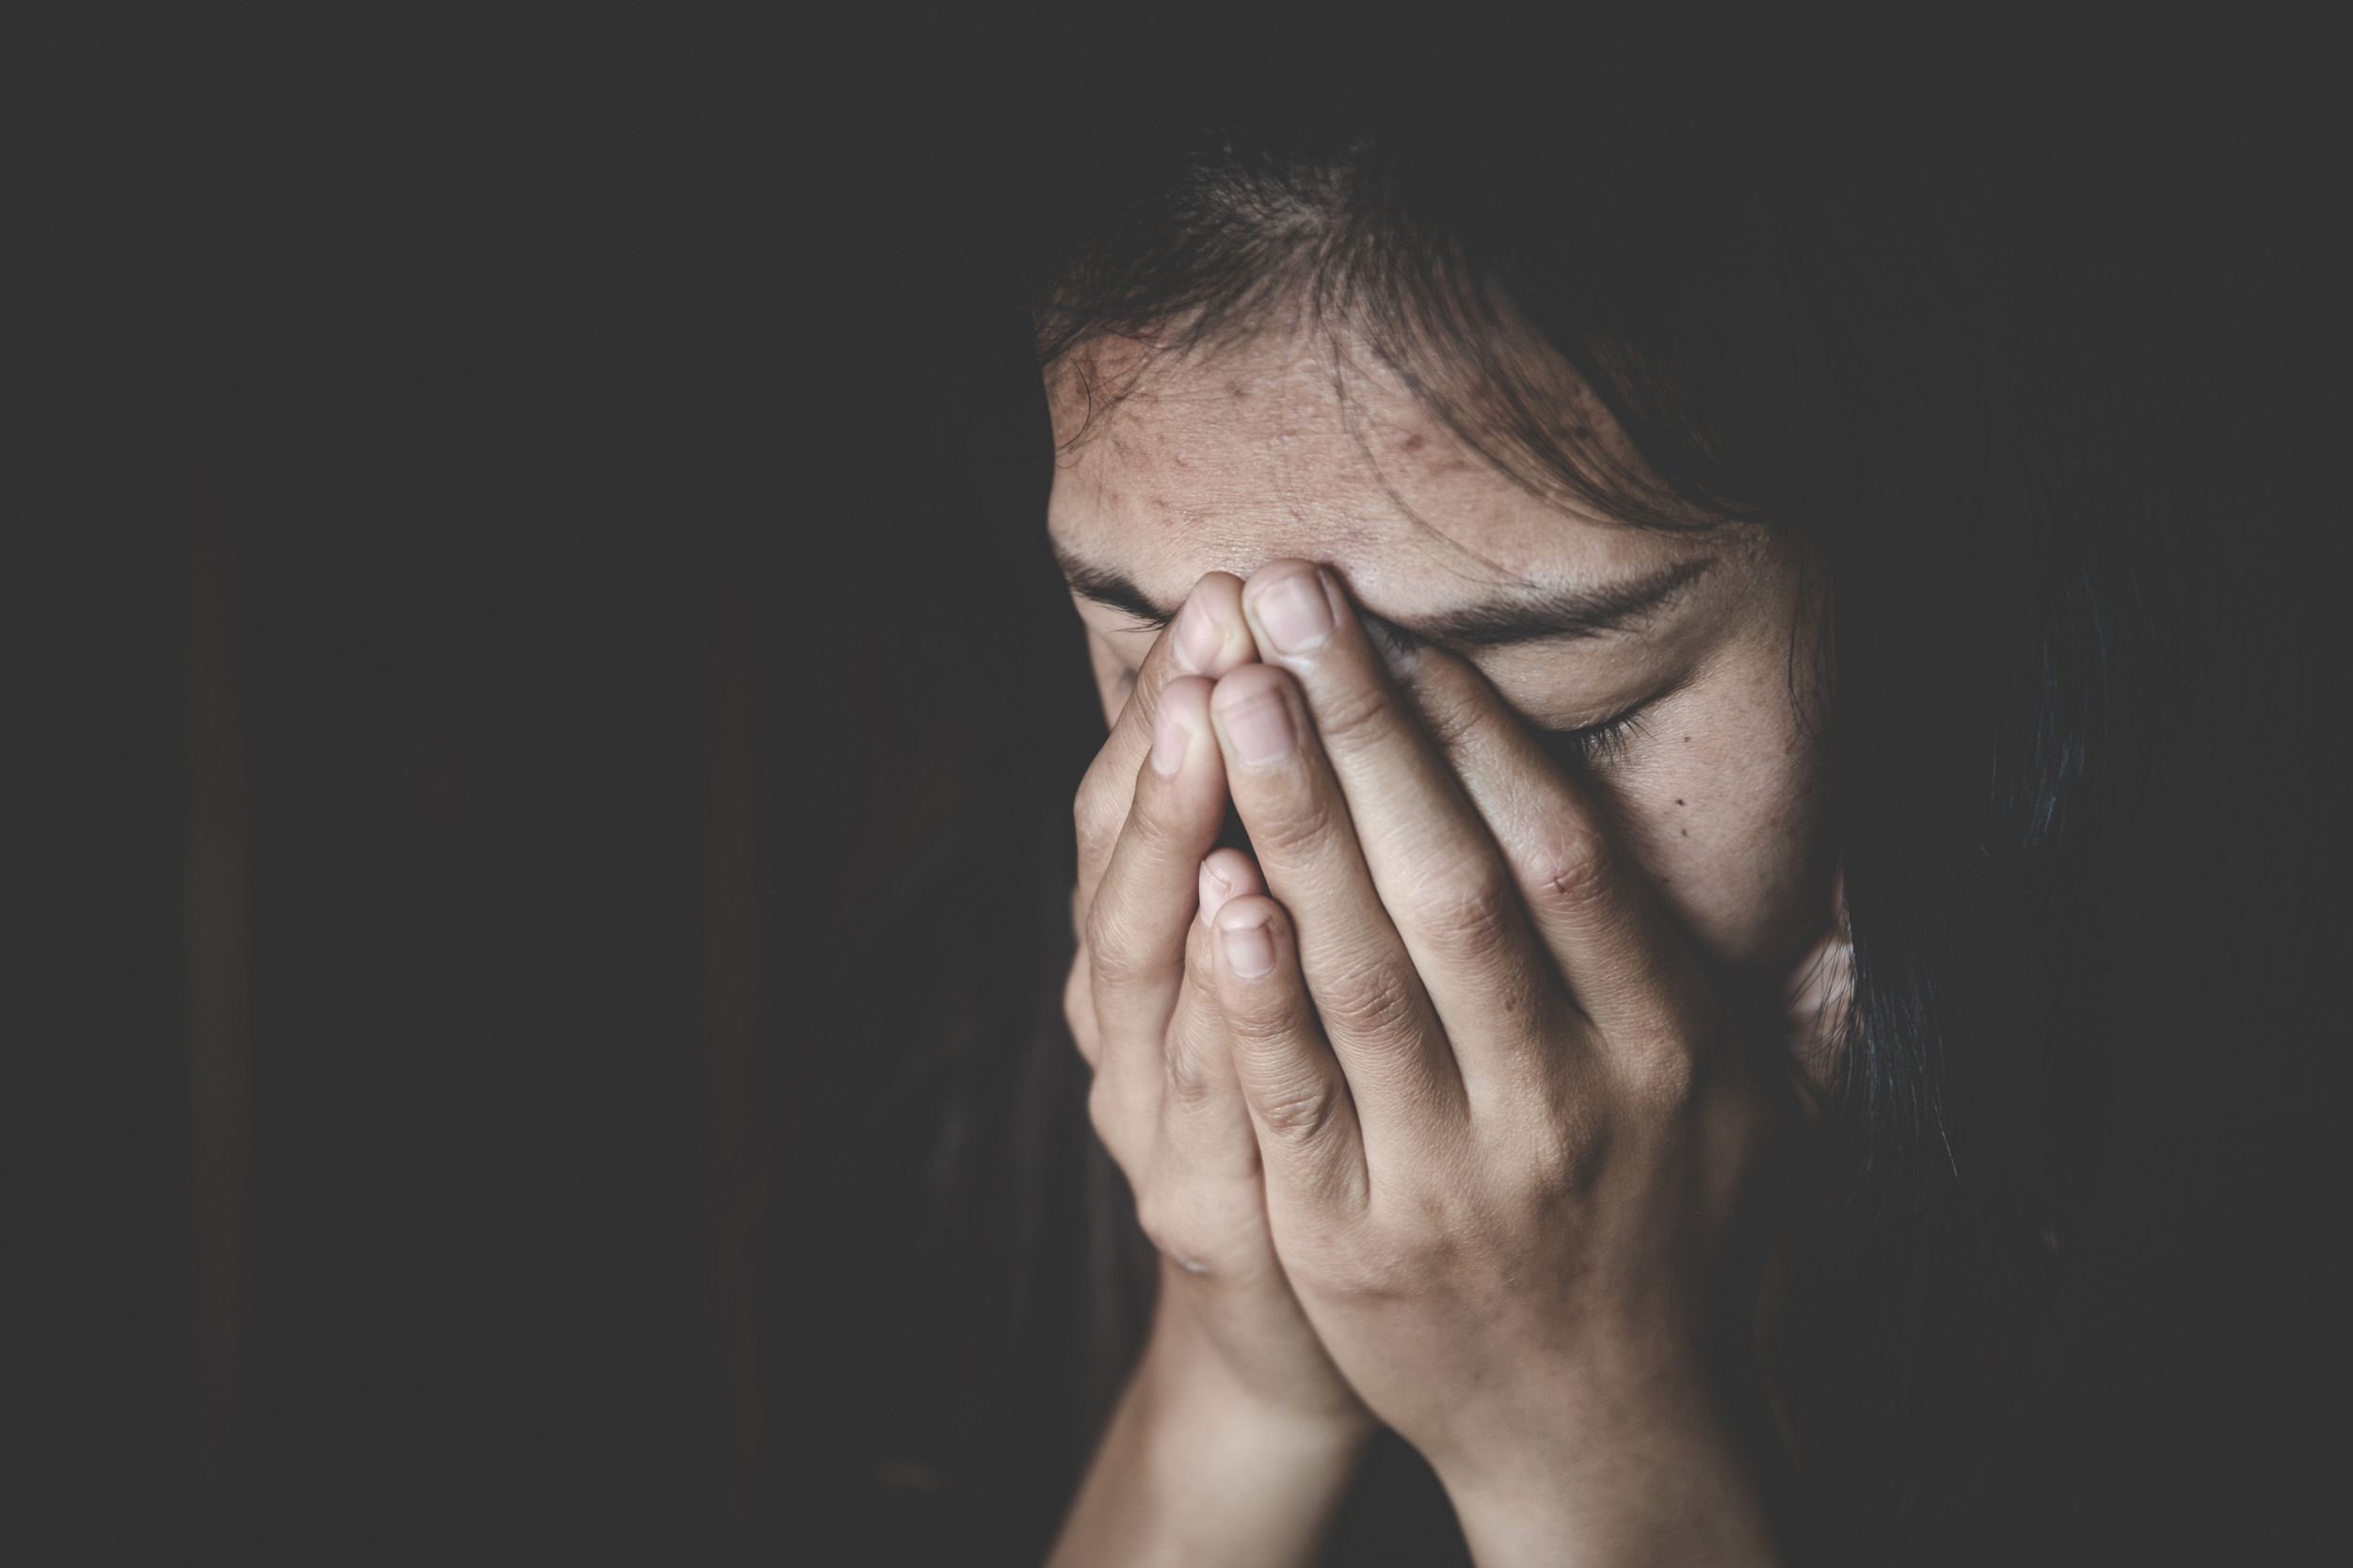 domestic abuse, domestic violence Peel Region Canada